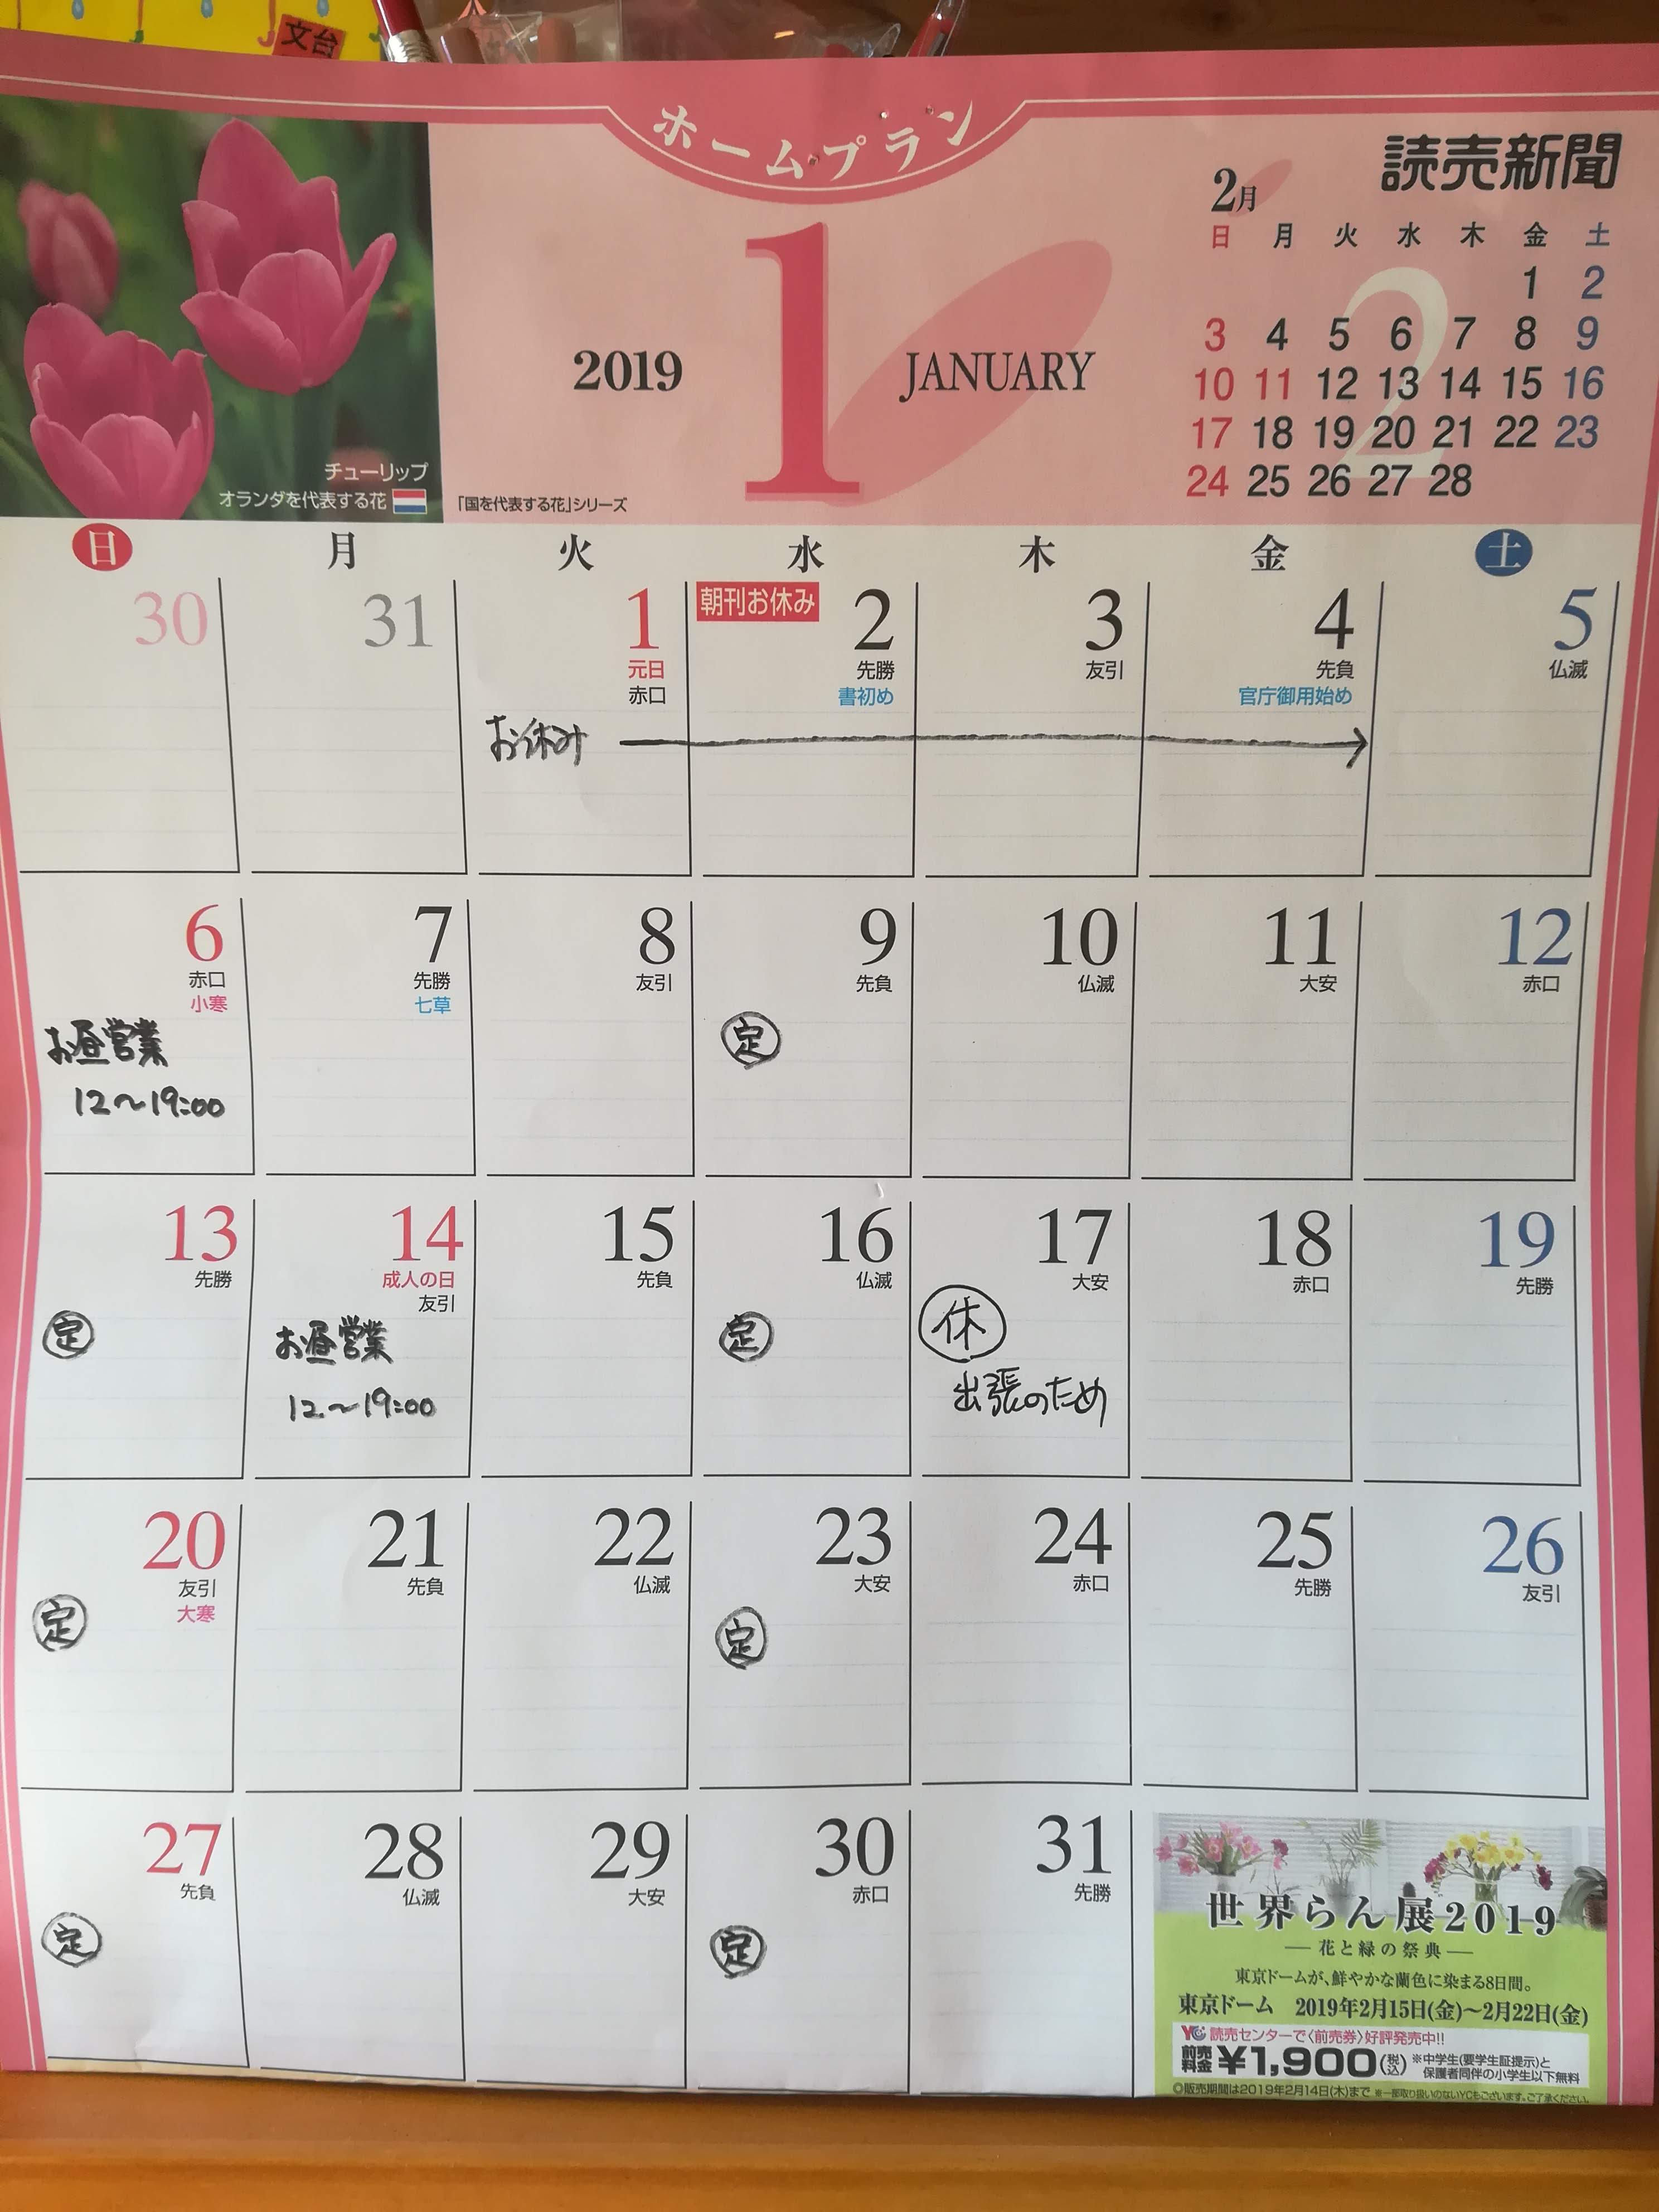 【訂正とお詫び】１月のカレンダーに誤りがございました。